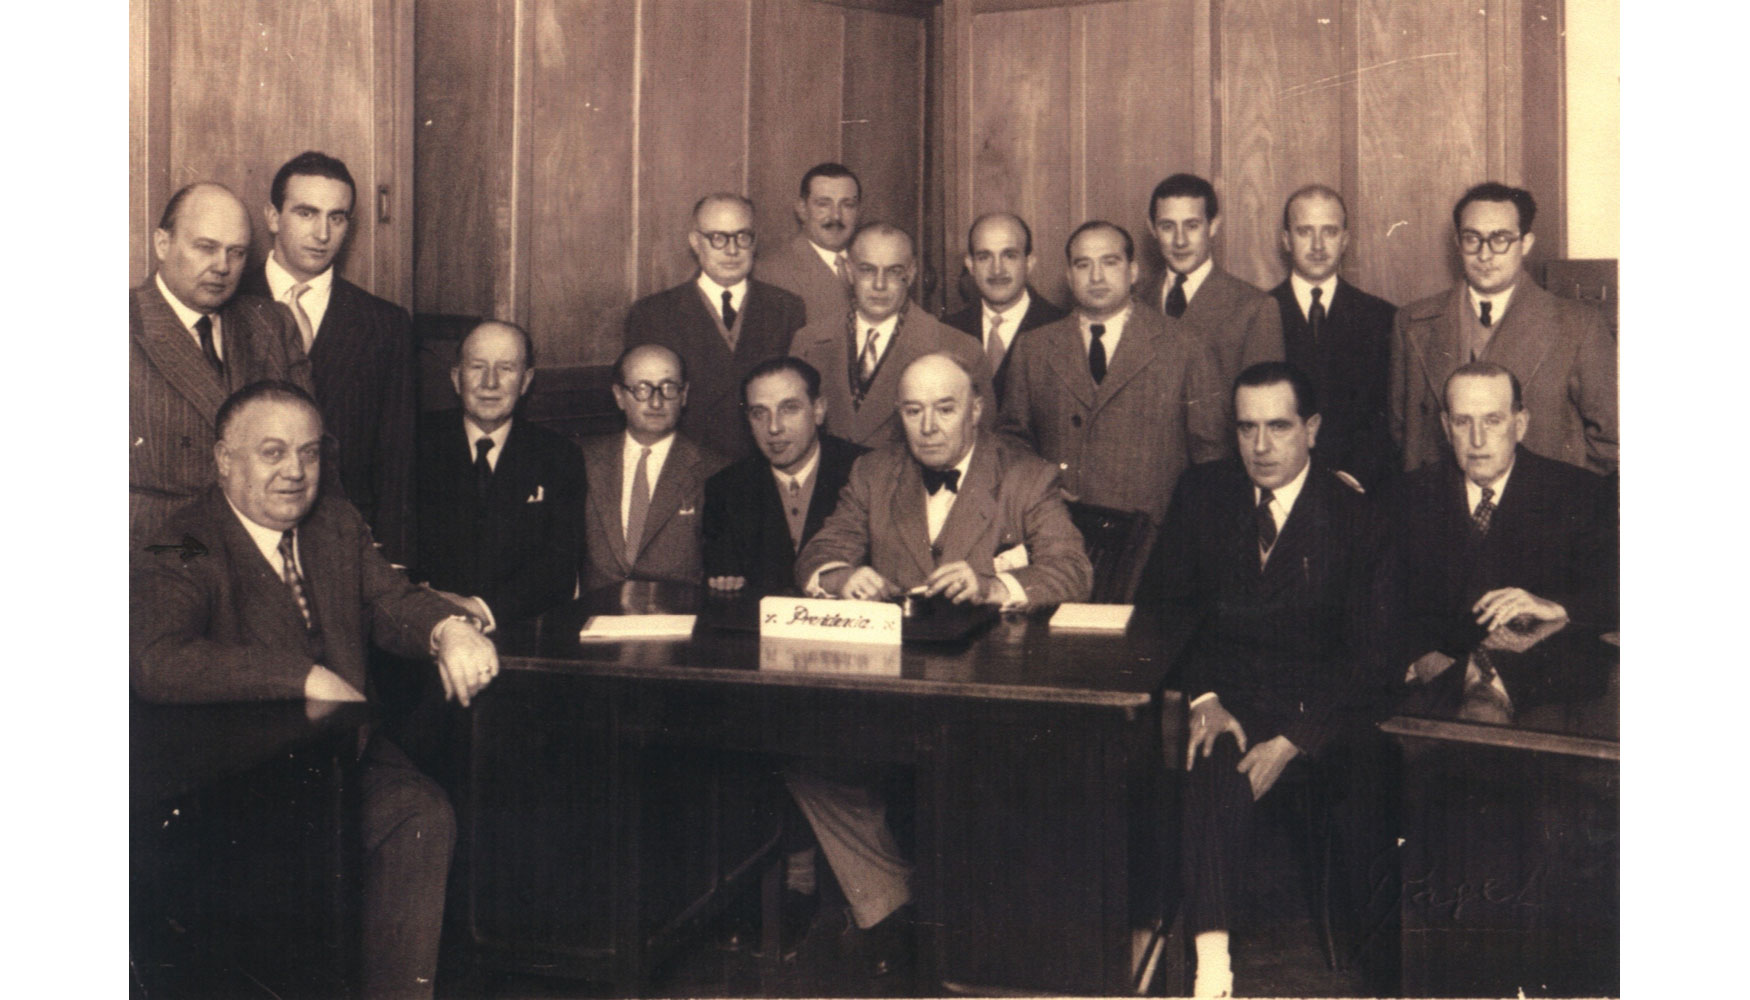 Constitucin de la Asociacin en 1949. Miguel Montabes, impulsor, fundador y socio de la entidad, aparece el segundo por la izquierda...